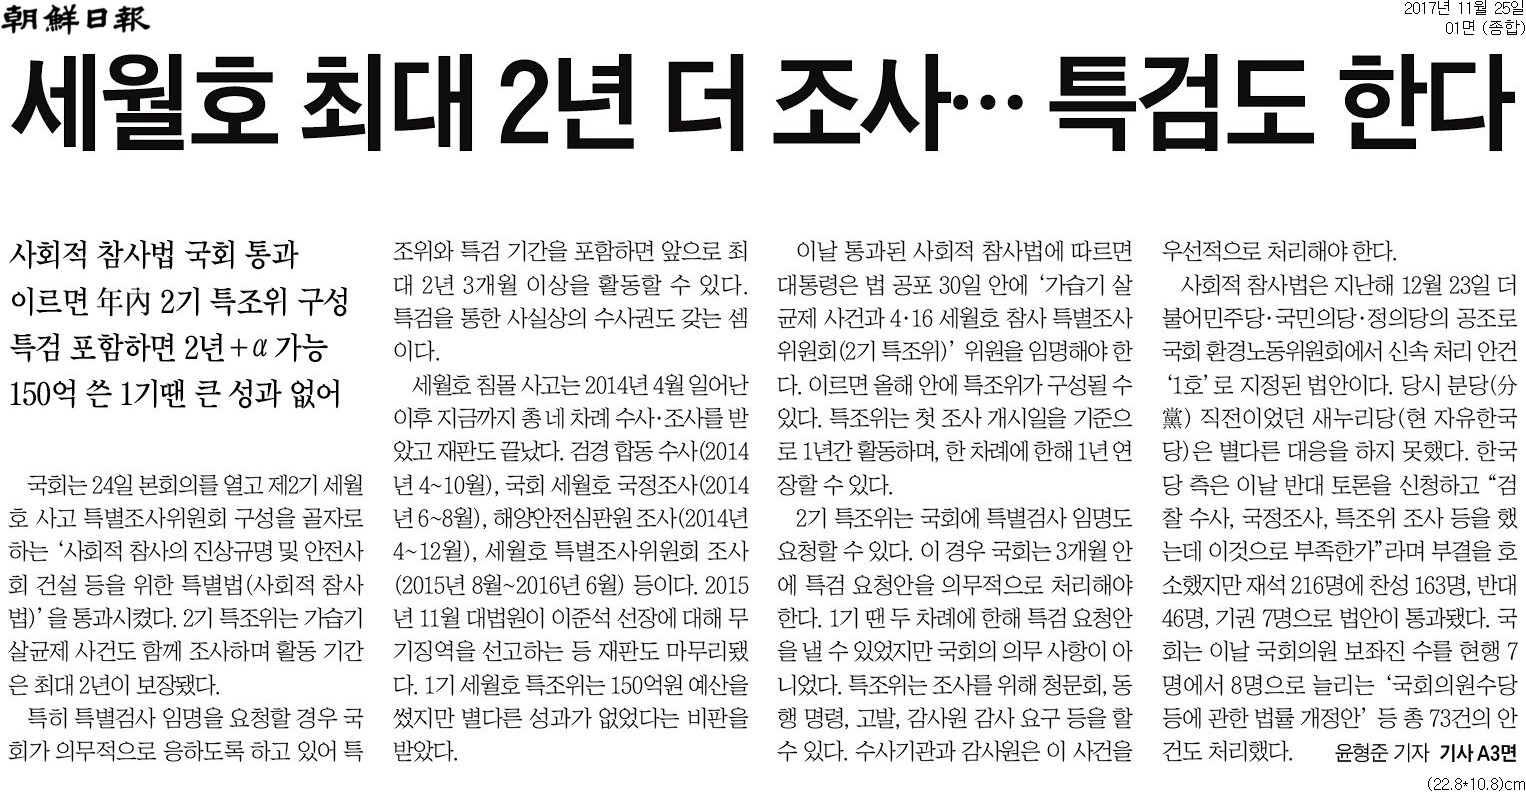 ▲ 11월25일자 조선일보 1면 기사.